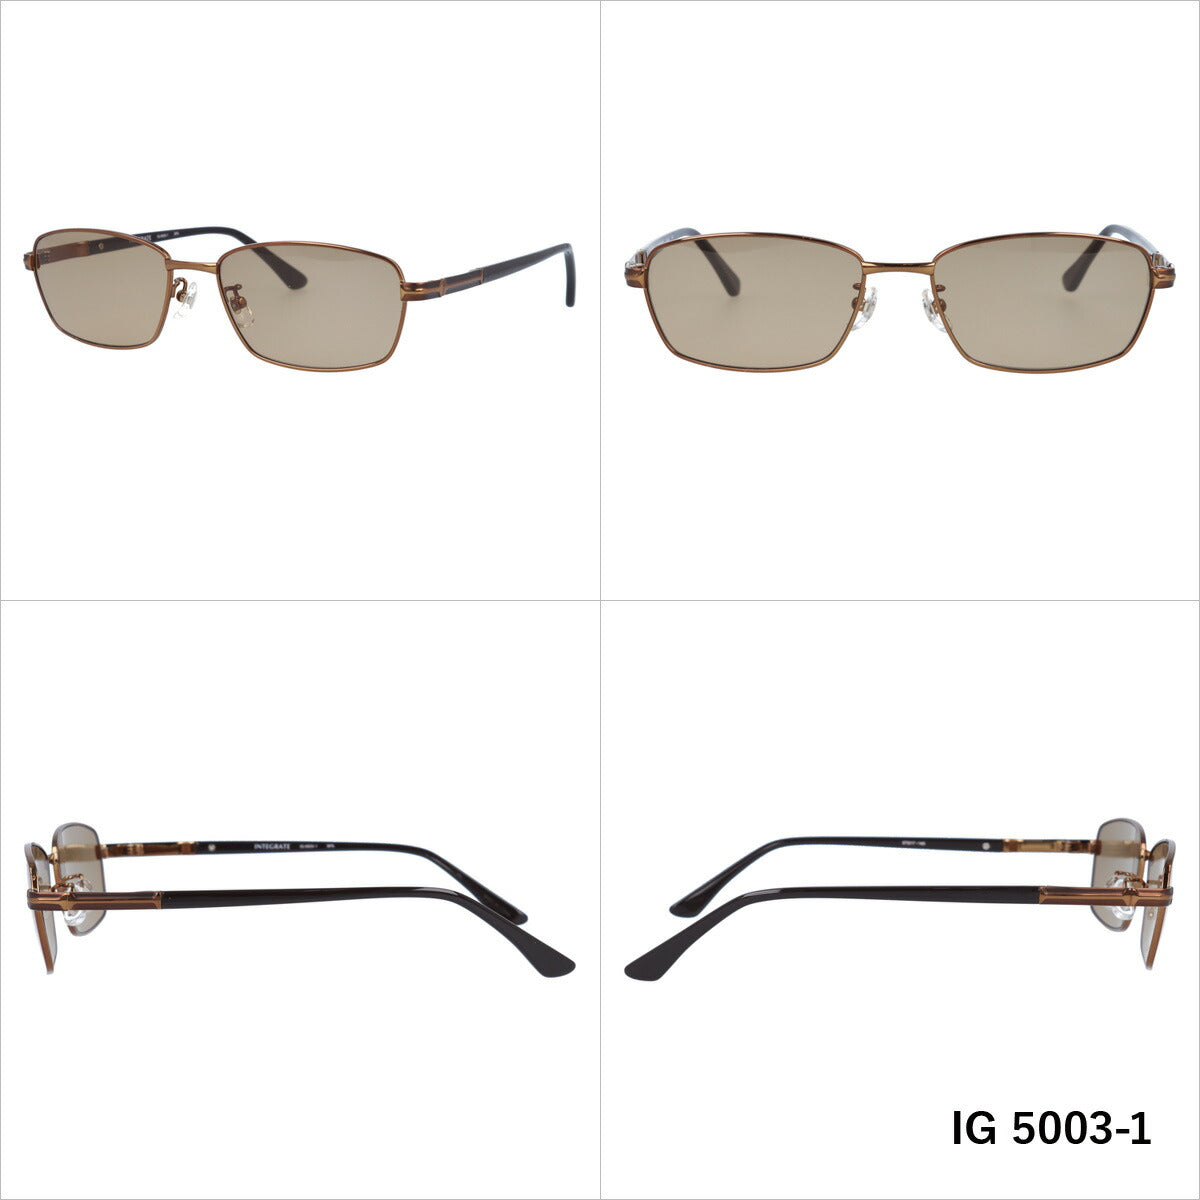 おしゃれ サングラス INTEGRATE インテグレート IG 5003 全3色 57サイズ アジアンフィット スクエア型 メンズ レディース UVカット 紫外線 対策 ブランド 眼鏡 メガネ アイウェア 人気 おすすめ ラッピング無料